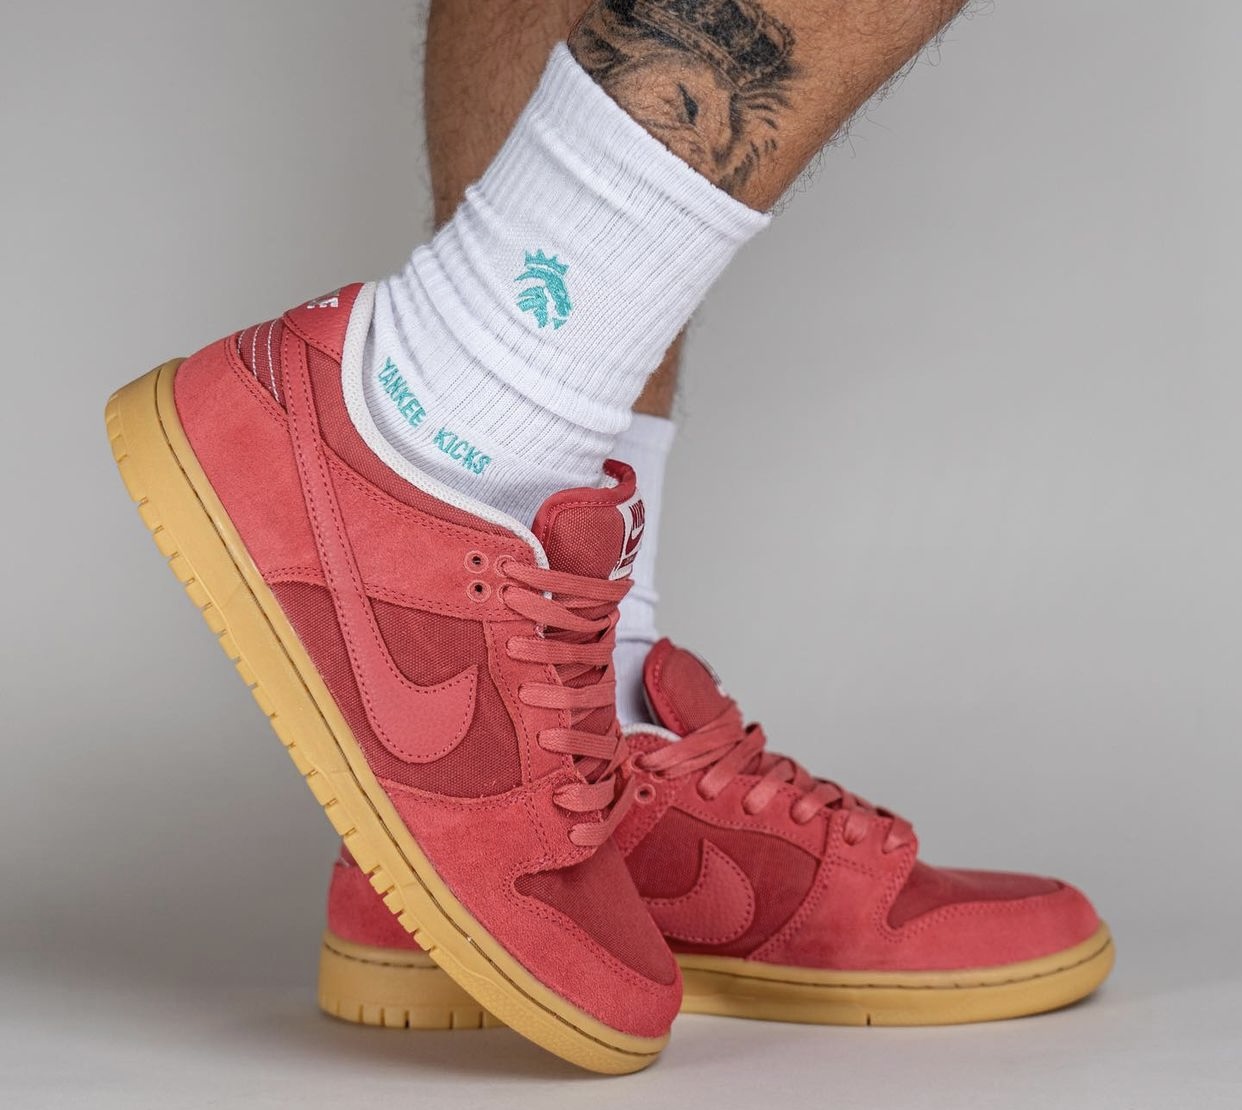 Nike SB Dunk Low Adobe DV5429 600 Release Date On Feet 3